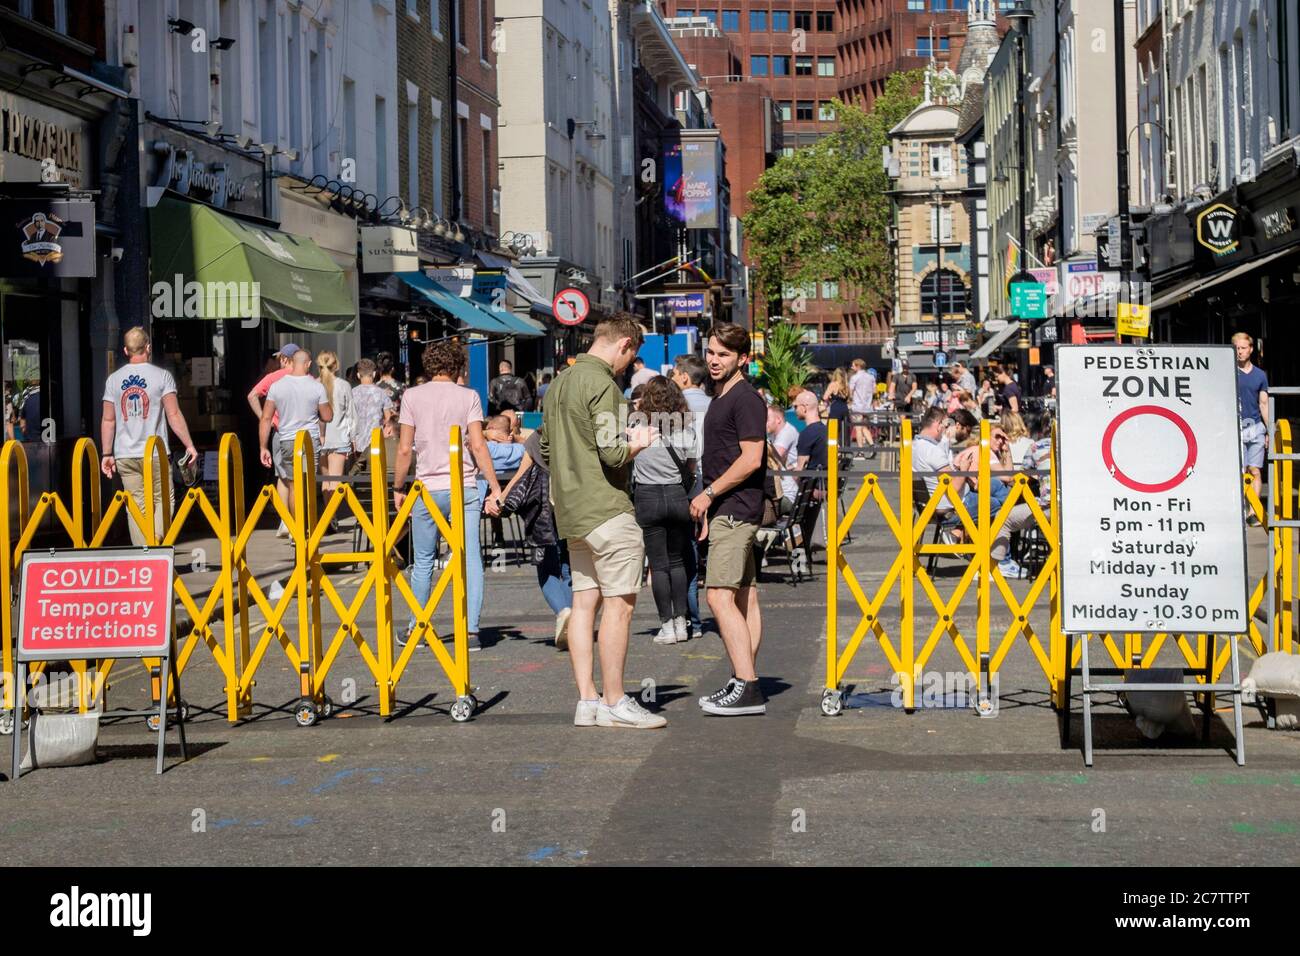 18 luglio 2020. Le strade nell'area di Soho nel centro di Londra sono state pedonali per consentire ai bar e ai ristoranti di allestire aree salotto all'aperto per mantenere le normative di allontanamento sociale tra i clienti, poiché le misure di allentamento Covid-19 sono state attuate dal governo. Foto Stock